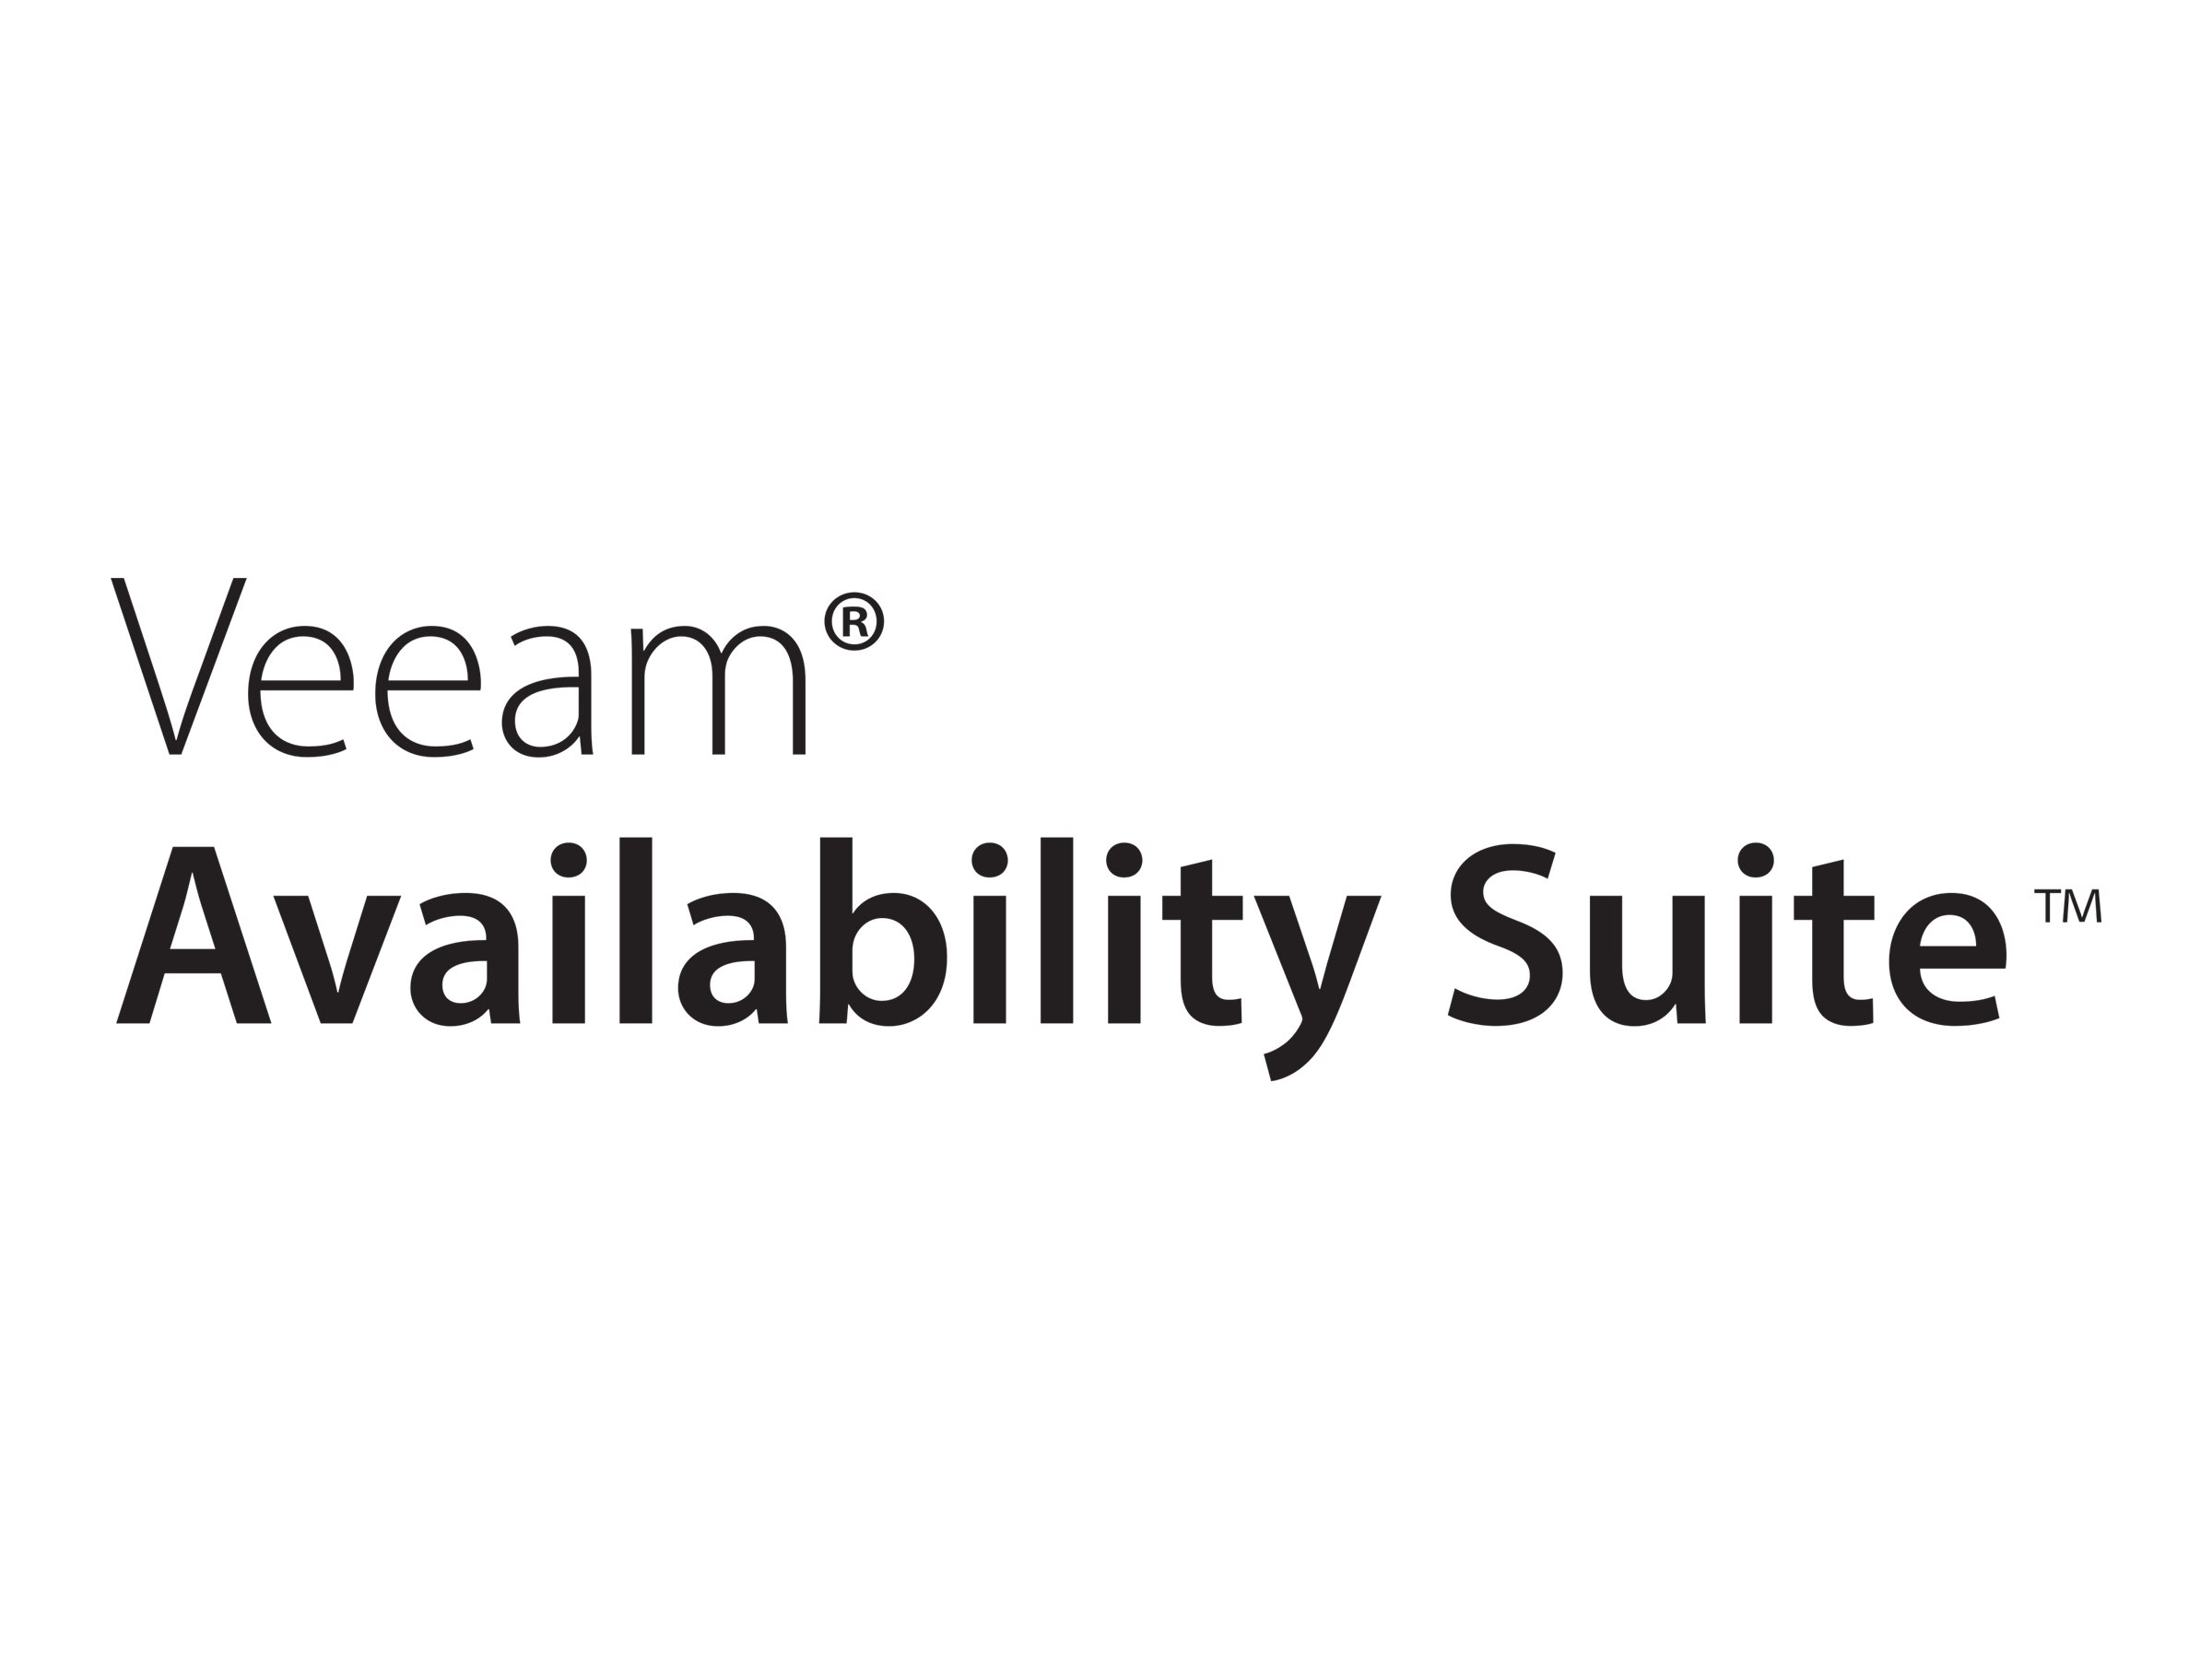 Veeam Availability Suite Universal License - Upfront Billing-Lizenz (Upgrade) (1 Jahr) + Production Support - 10 Instanzen - Upgrade von Veeam Backup & Replication